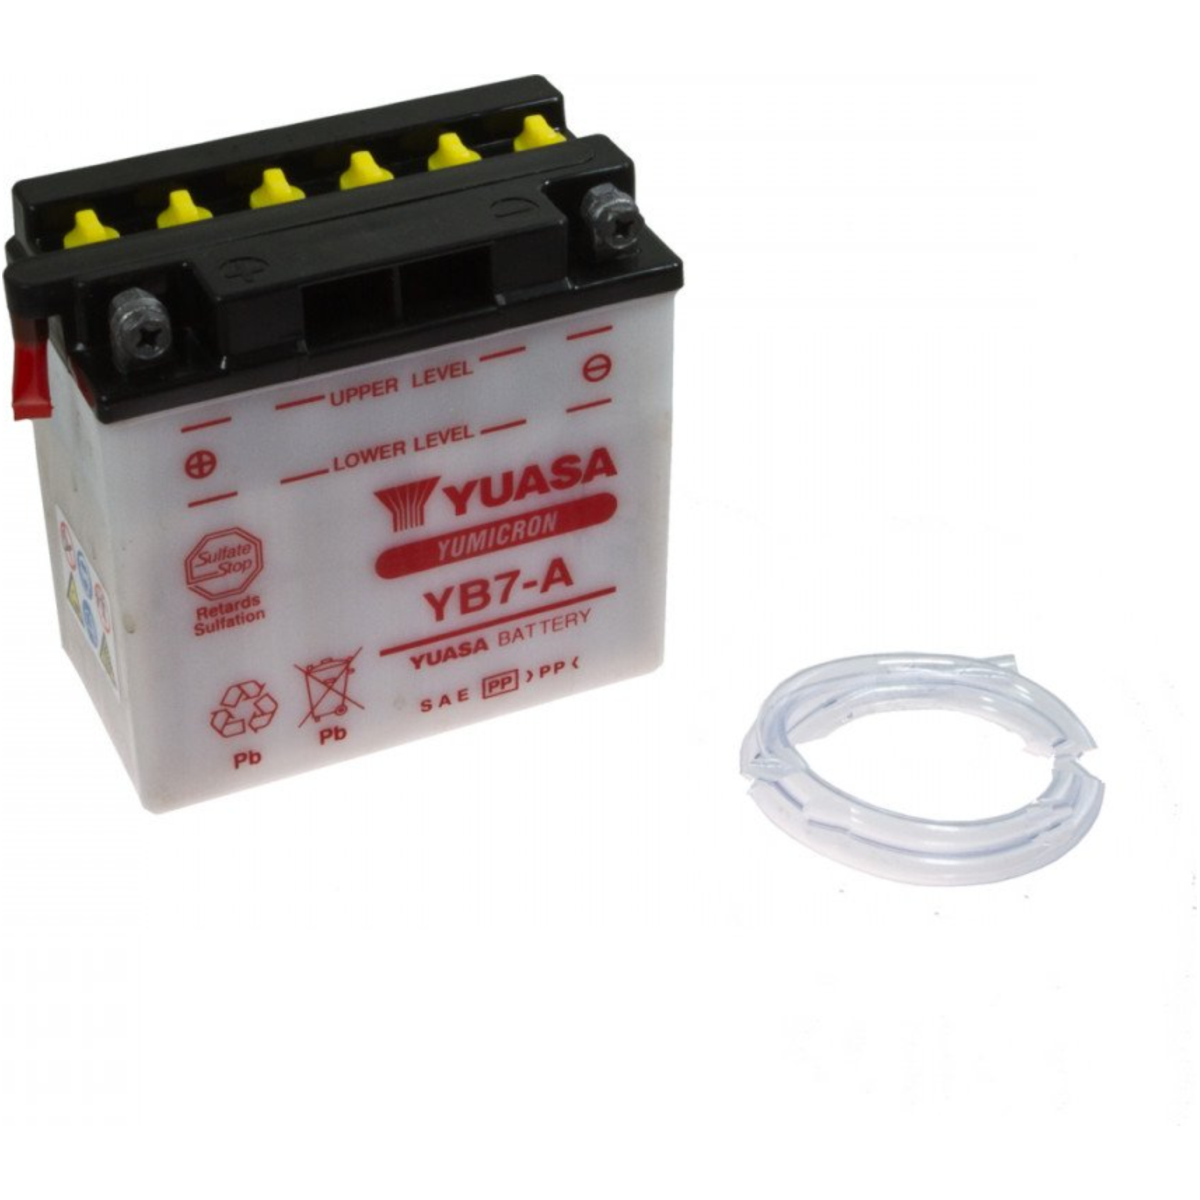 Yuasa yb7-a(dc) motorradbatterie yb7-a von Yuasa